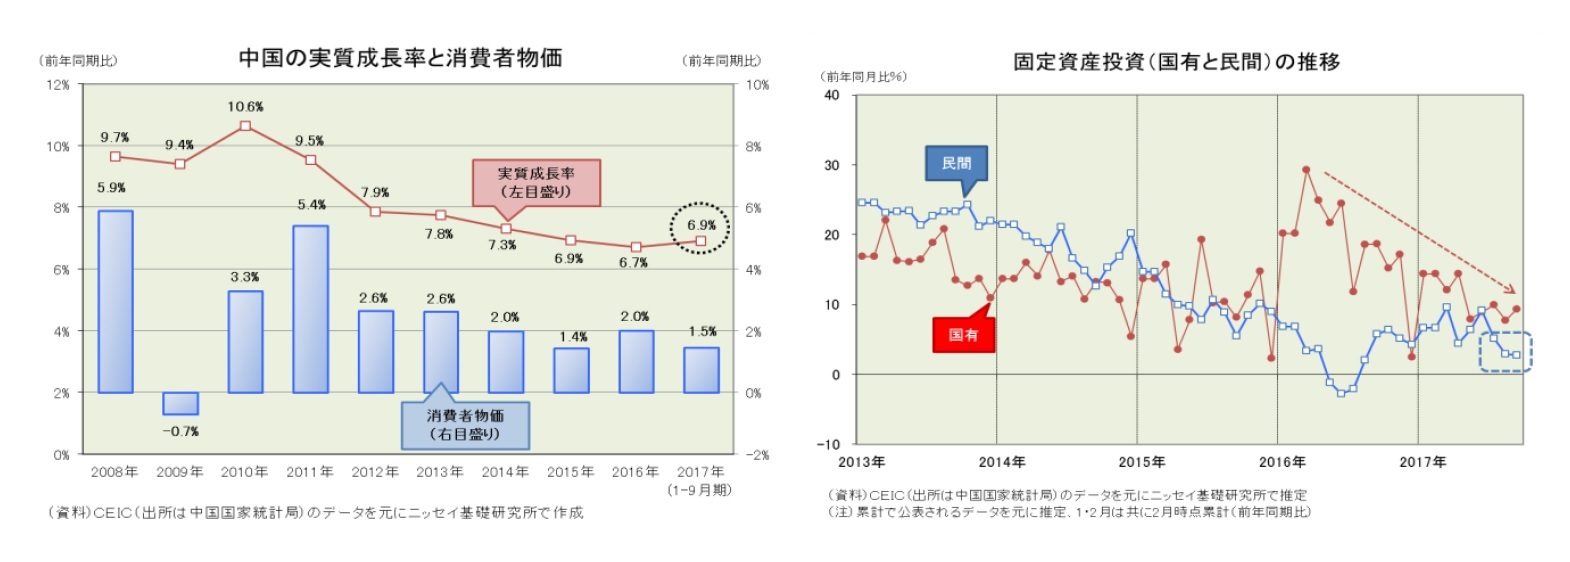 中国の実質成長率と消費者物価/固定資産投資(国有と民間)の推移